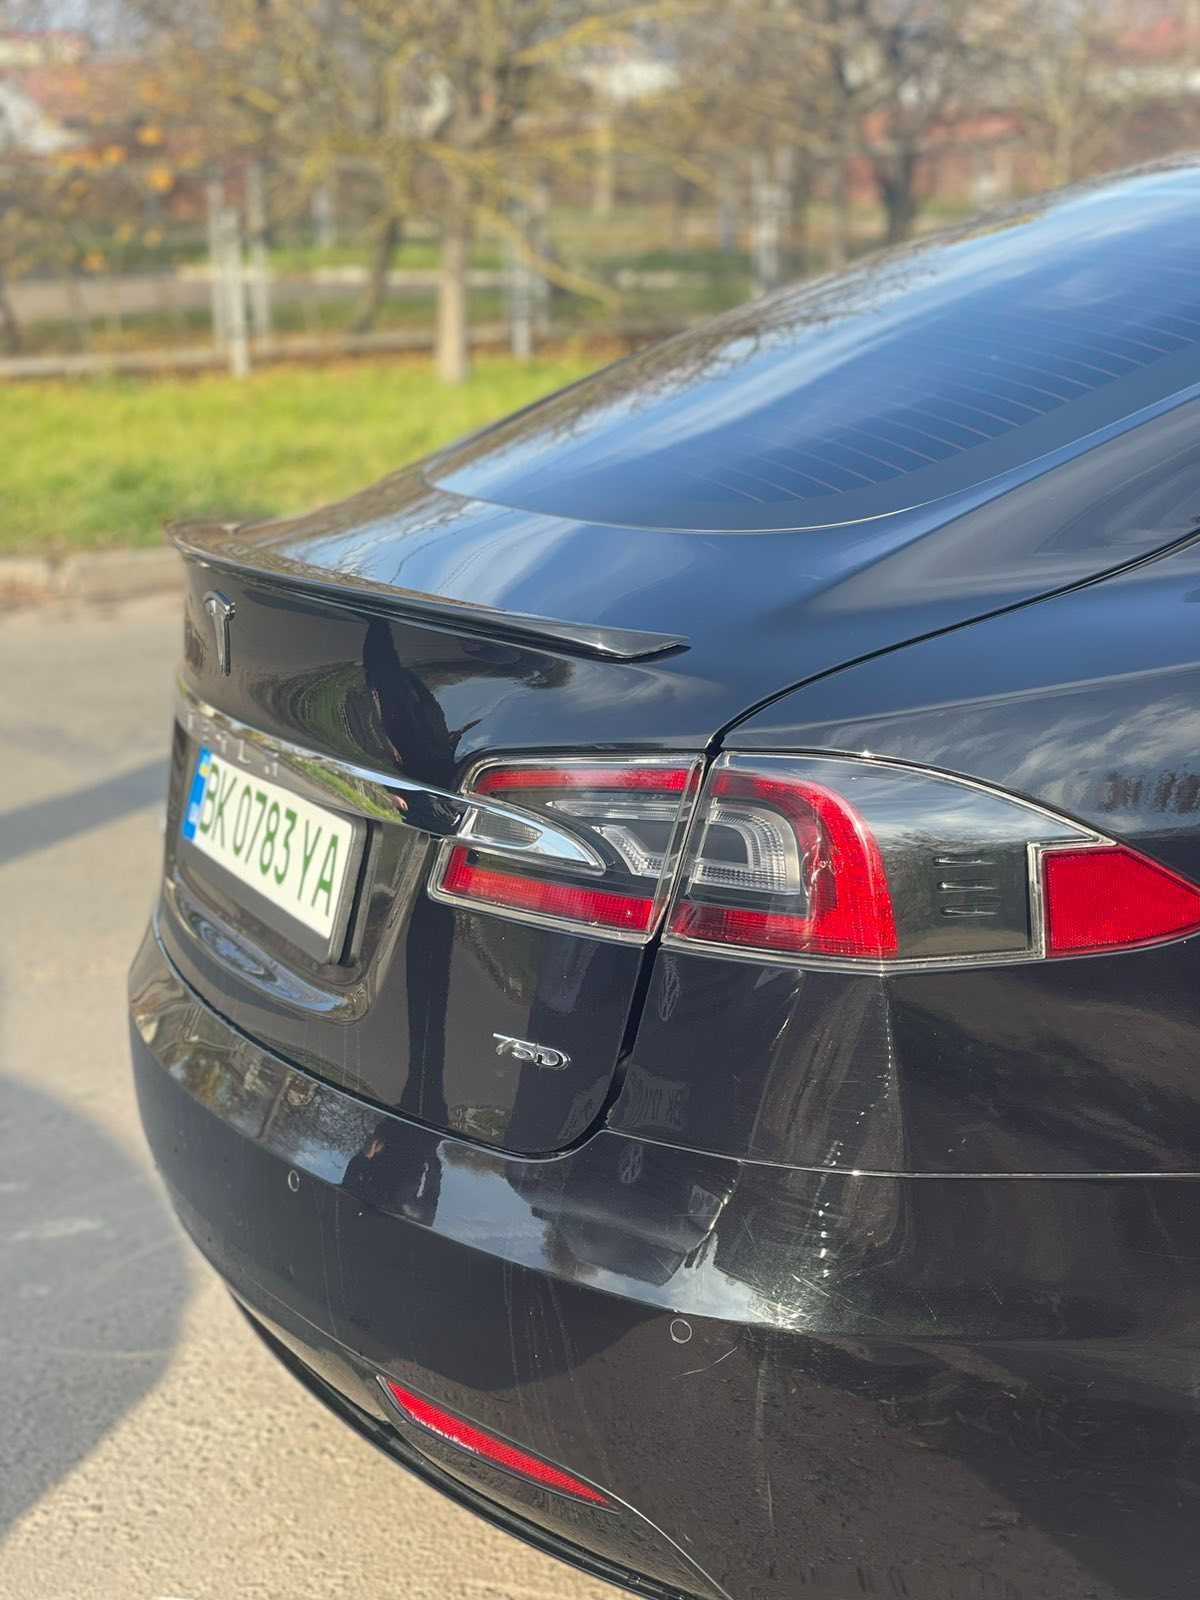 Тесла модел s спойлер перфоменс Tesla model S накладка на багажник